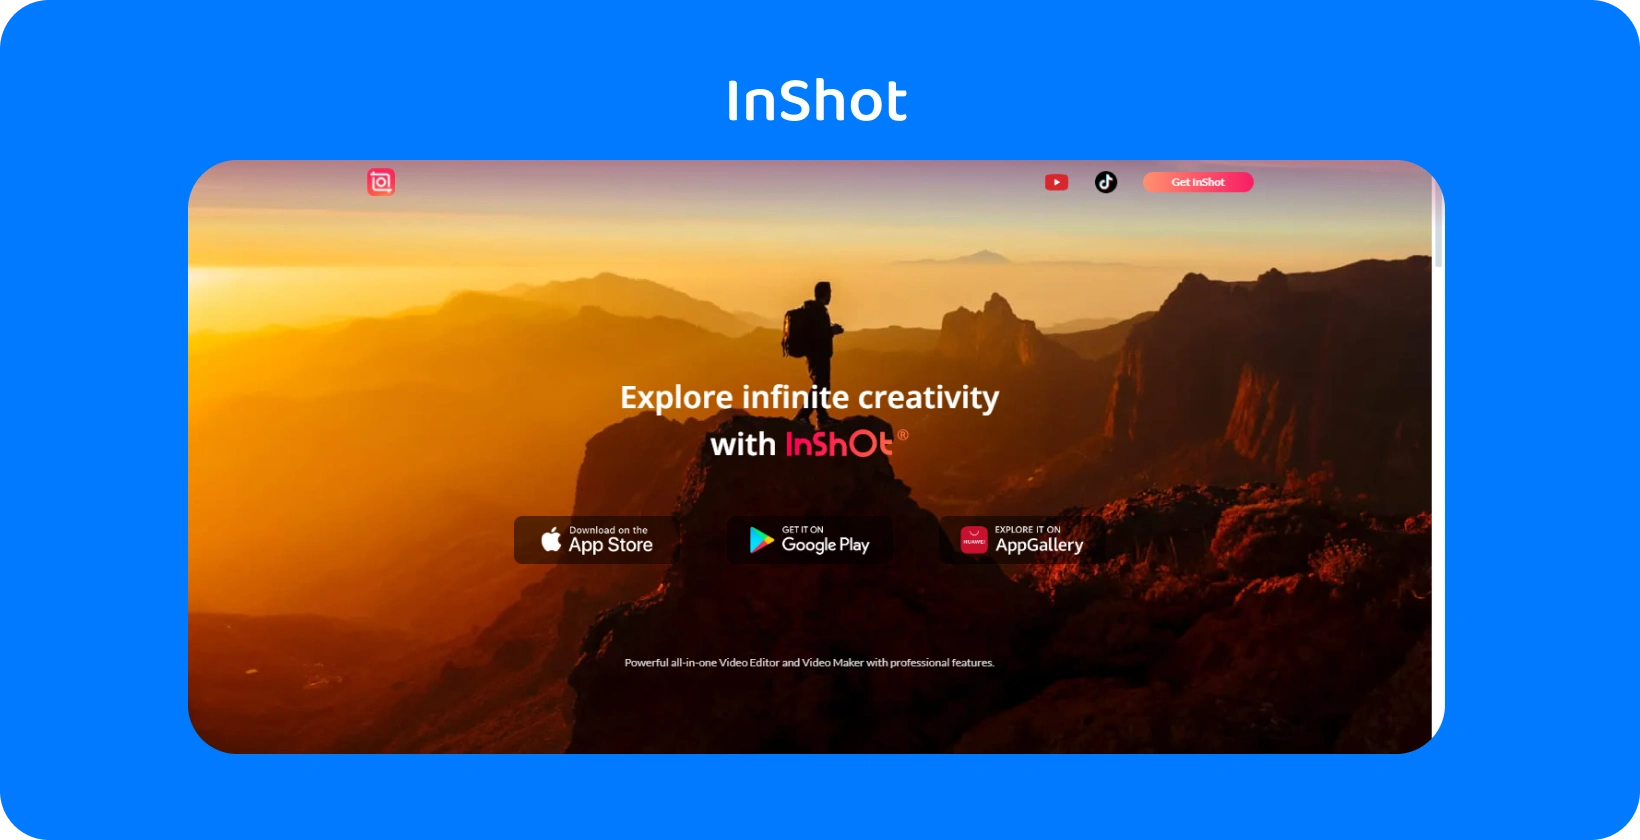 InShot 应用程序的广告以日落时分的徒步旅行者为特色，象征着该应用程序在视频编辑中探索无限创造力的承诺。
